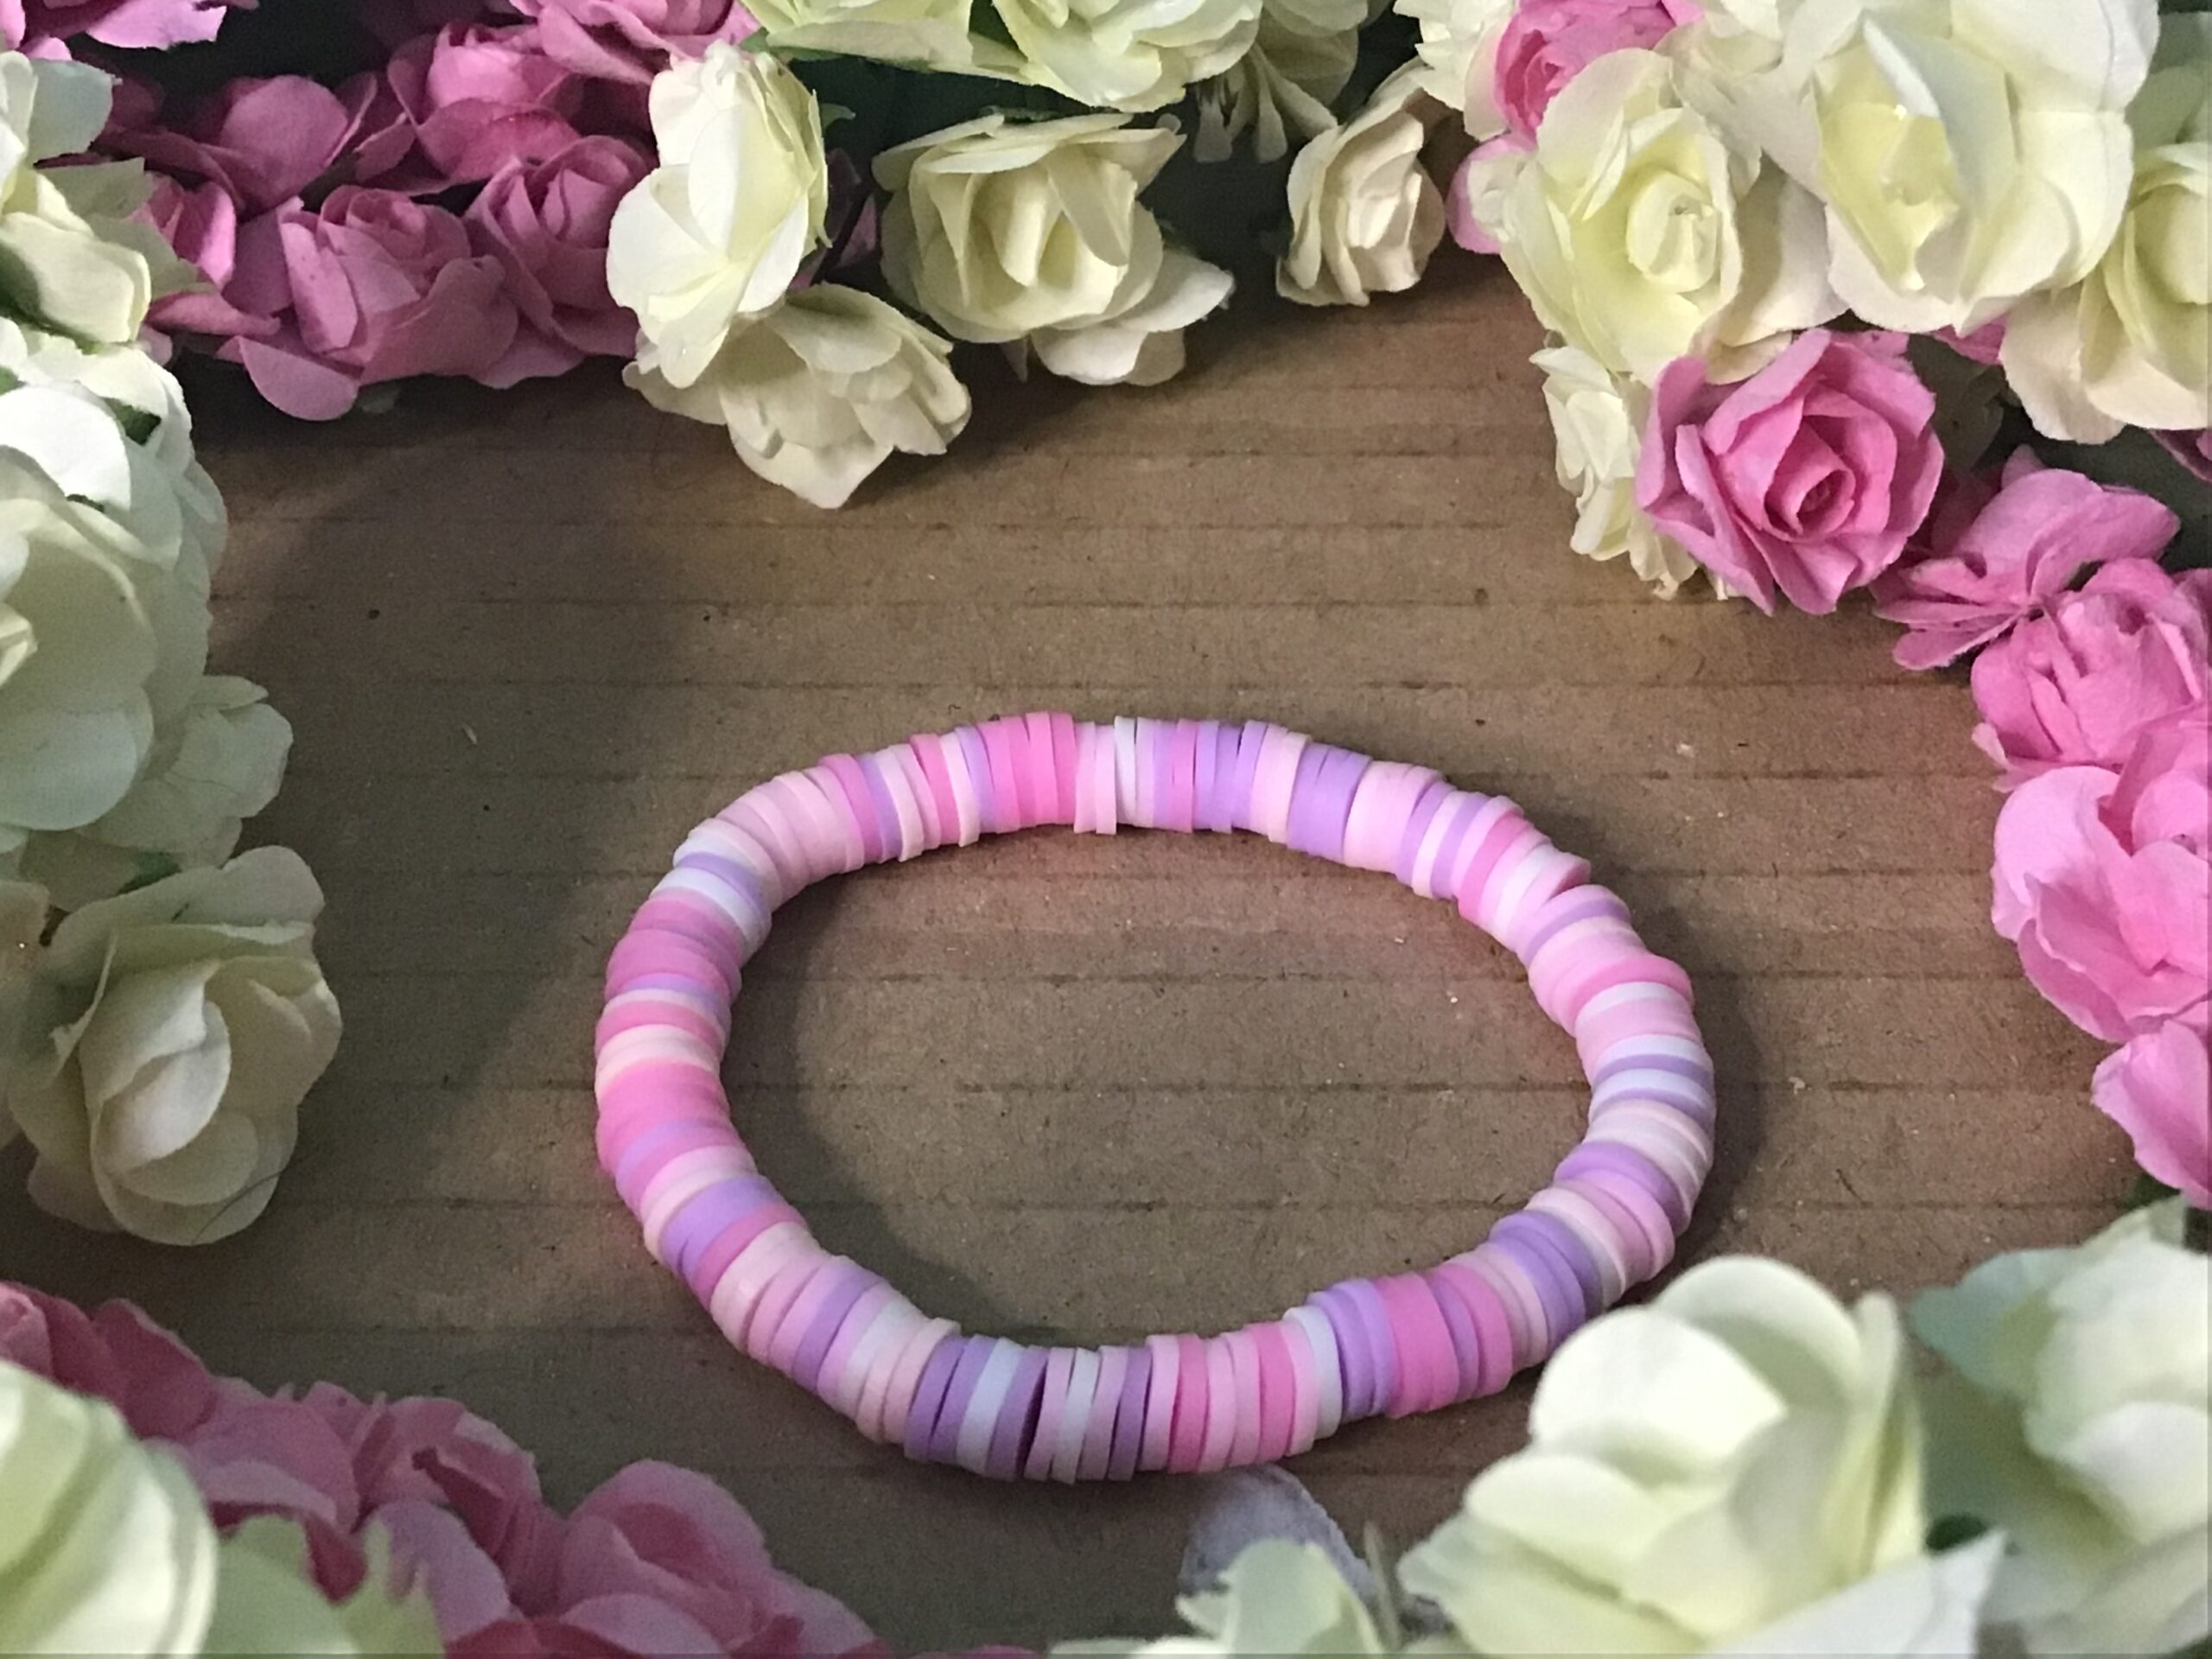 Cute pink bracelet